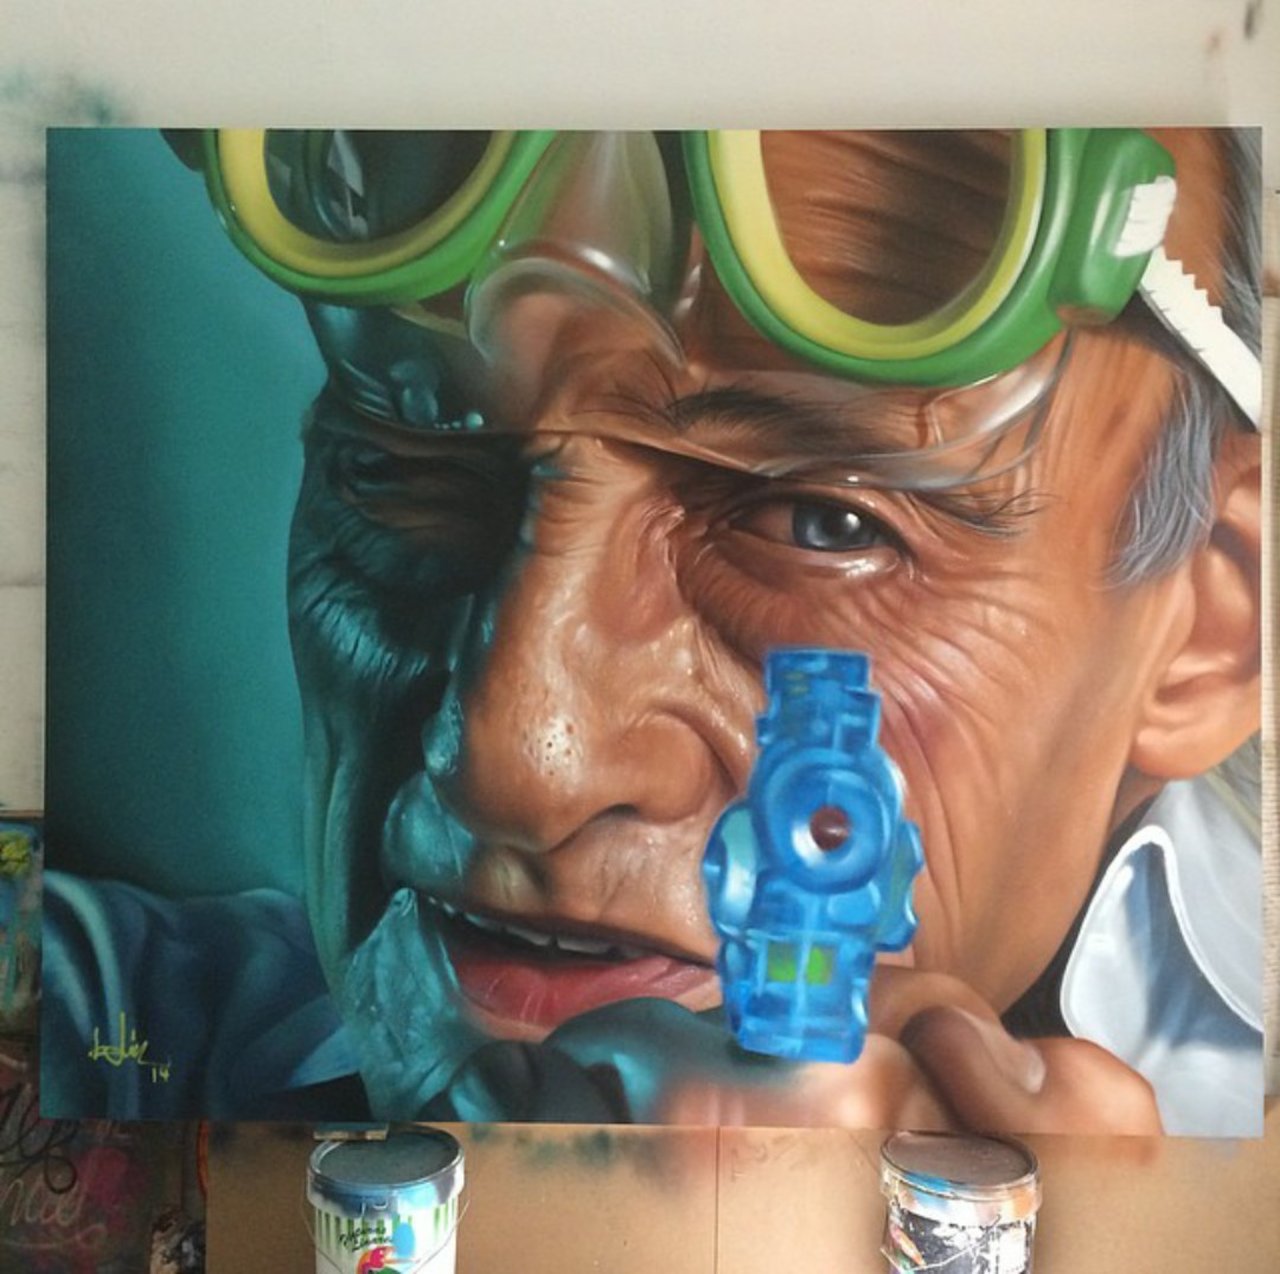 Spray paint on wood by Belin#streetart #art #mural #art https://t.co/uU86ygYyqF